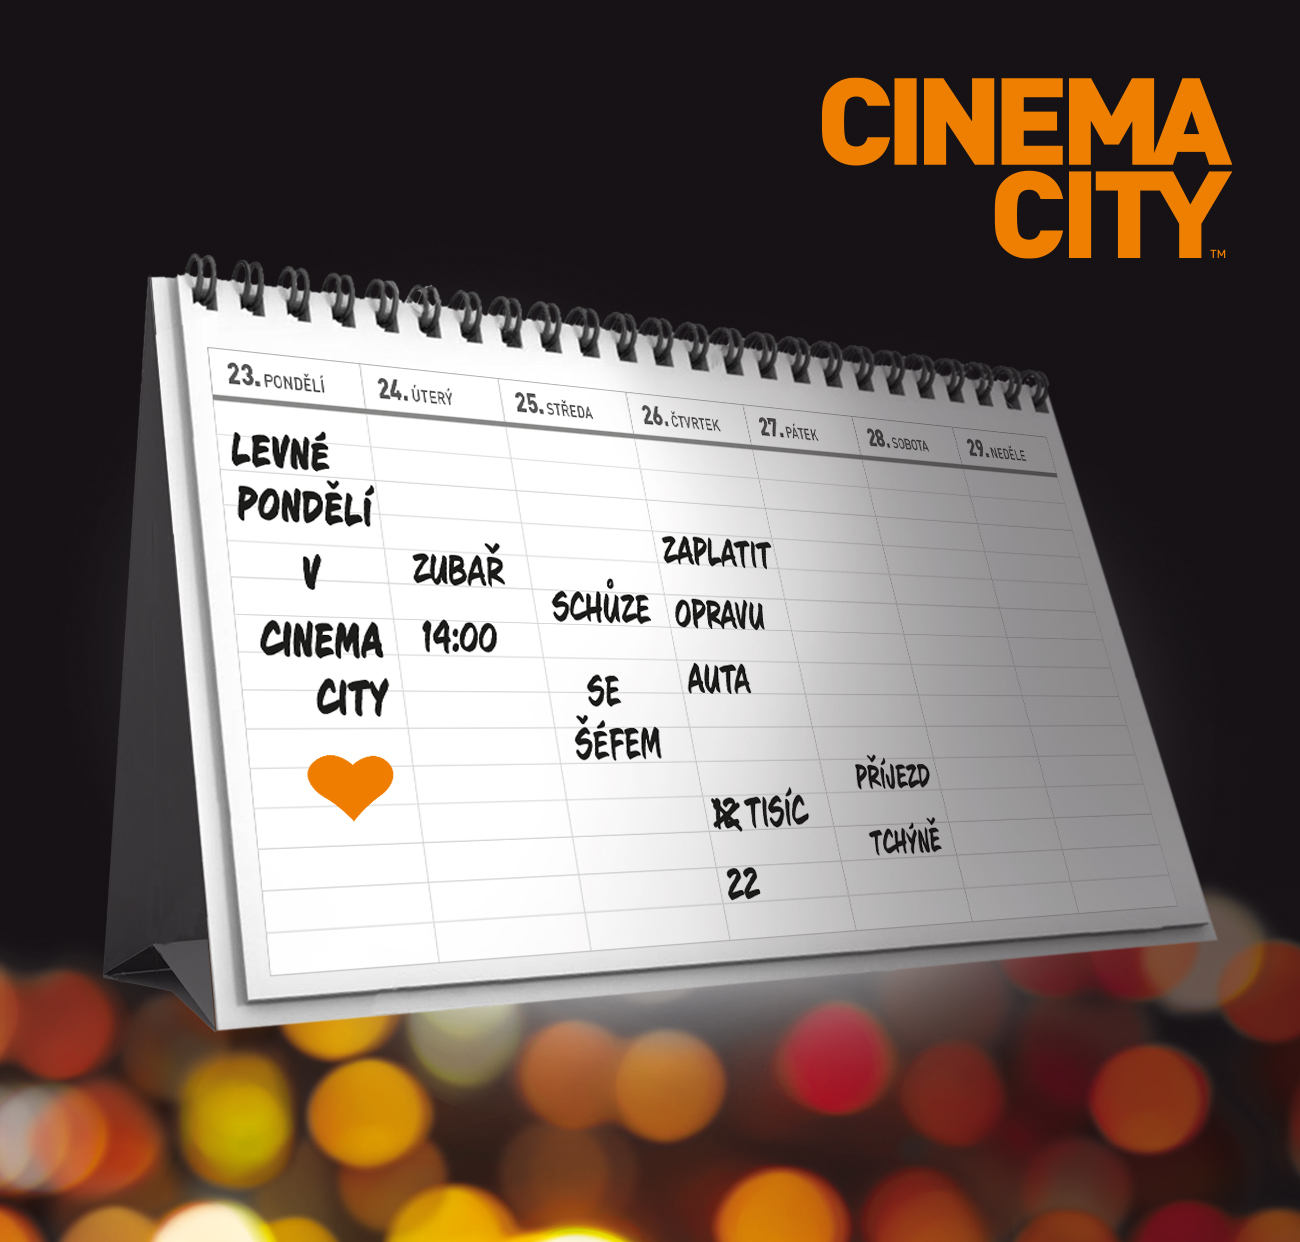 Cinema City Levné pondělí